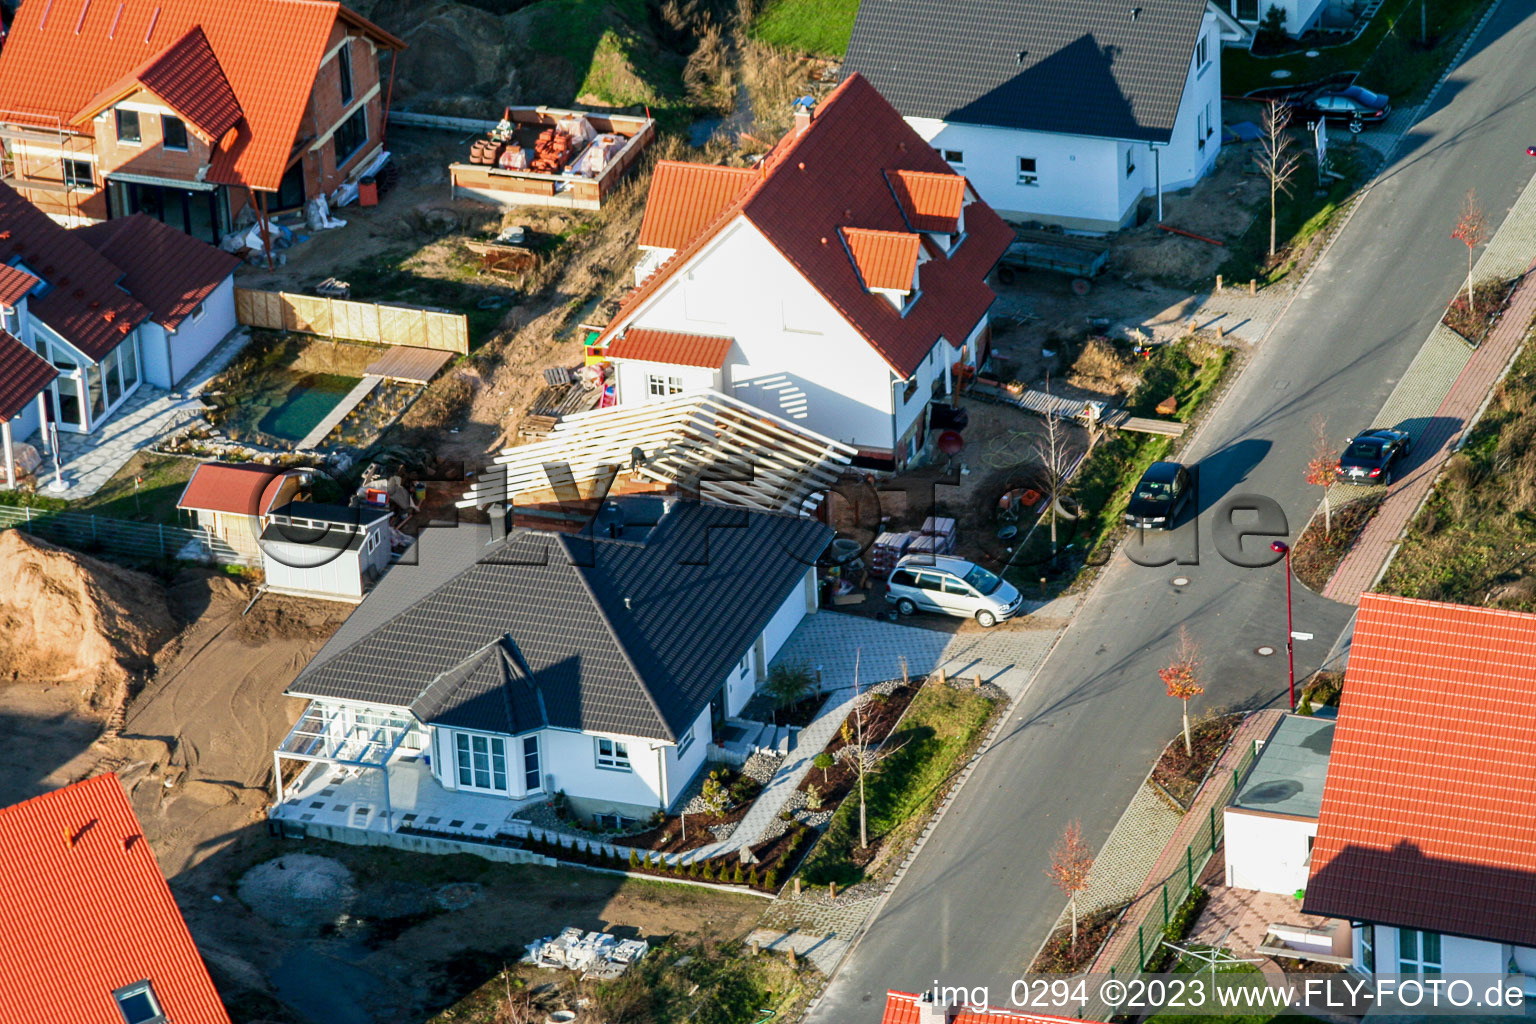 Rheinzabern Neubaugebiet An den Tongruben im Bundesland Rheinland-Pfalz, Deutschland von der Drohne aus gesehen